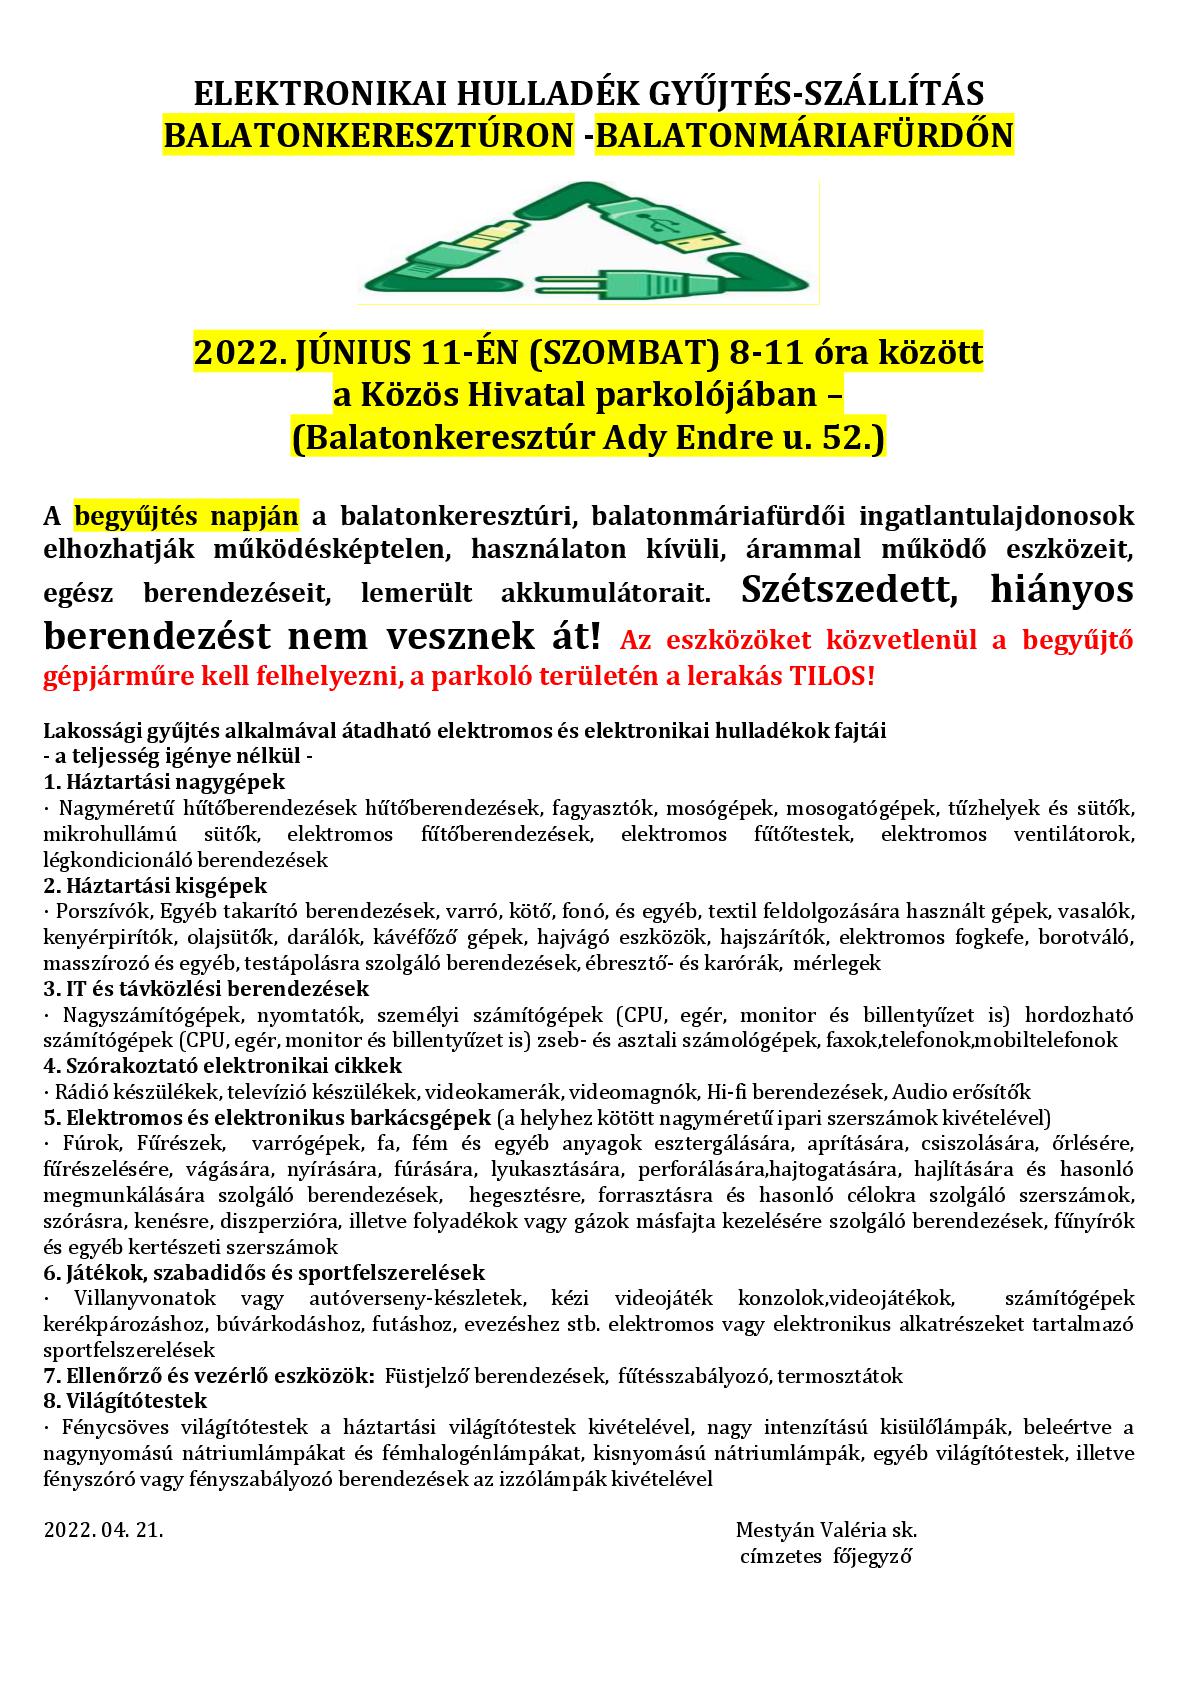 ELEKTRONIKAI-HULLADEK-GYUJTES-2022.-001